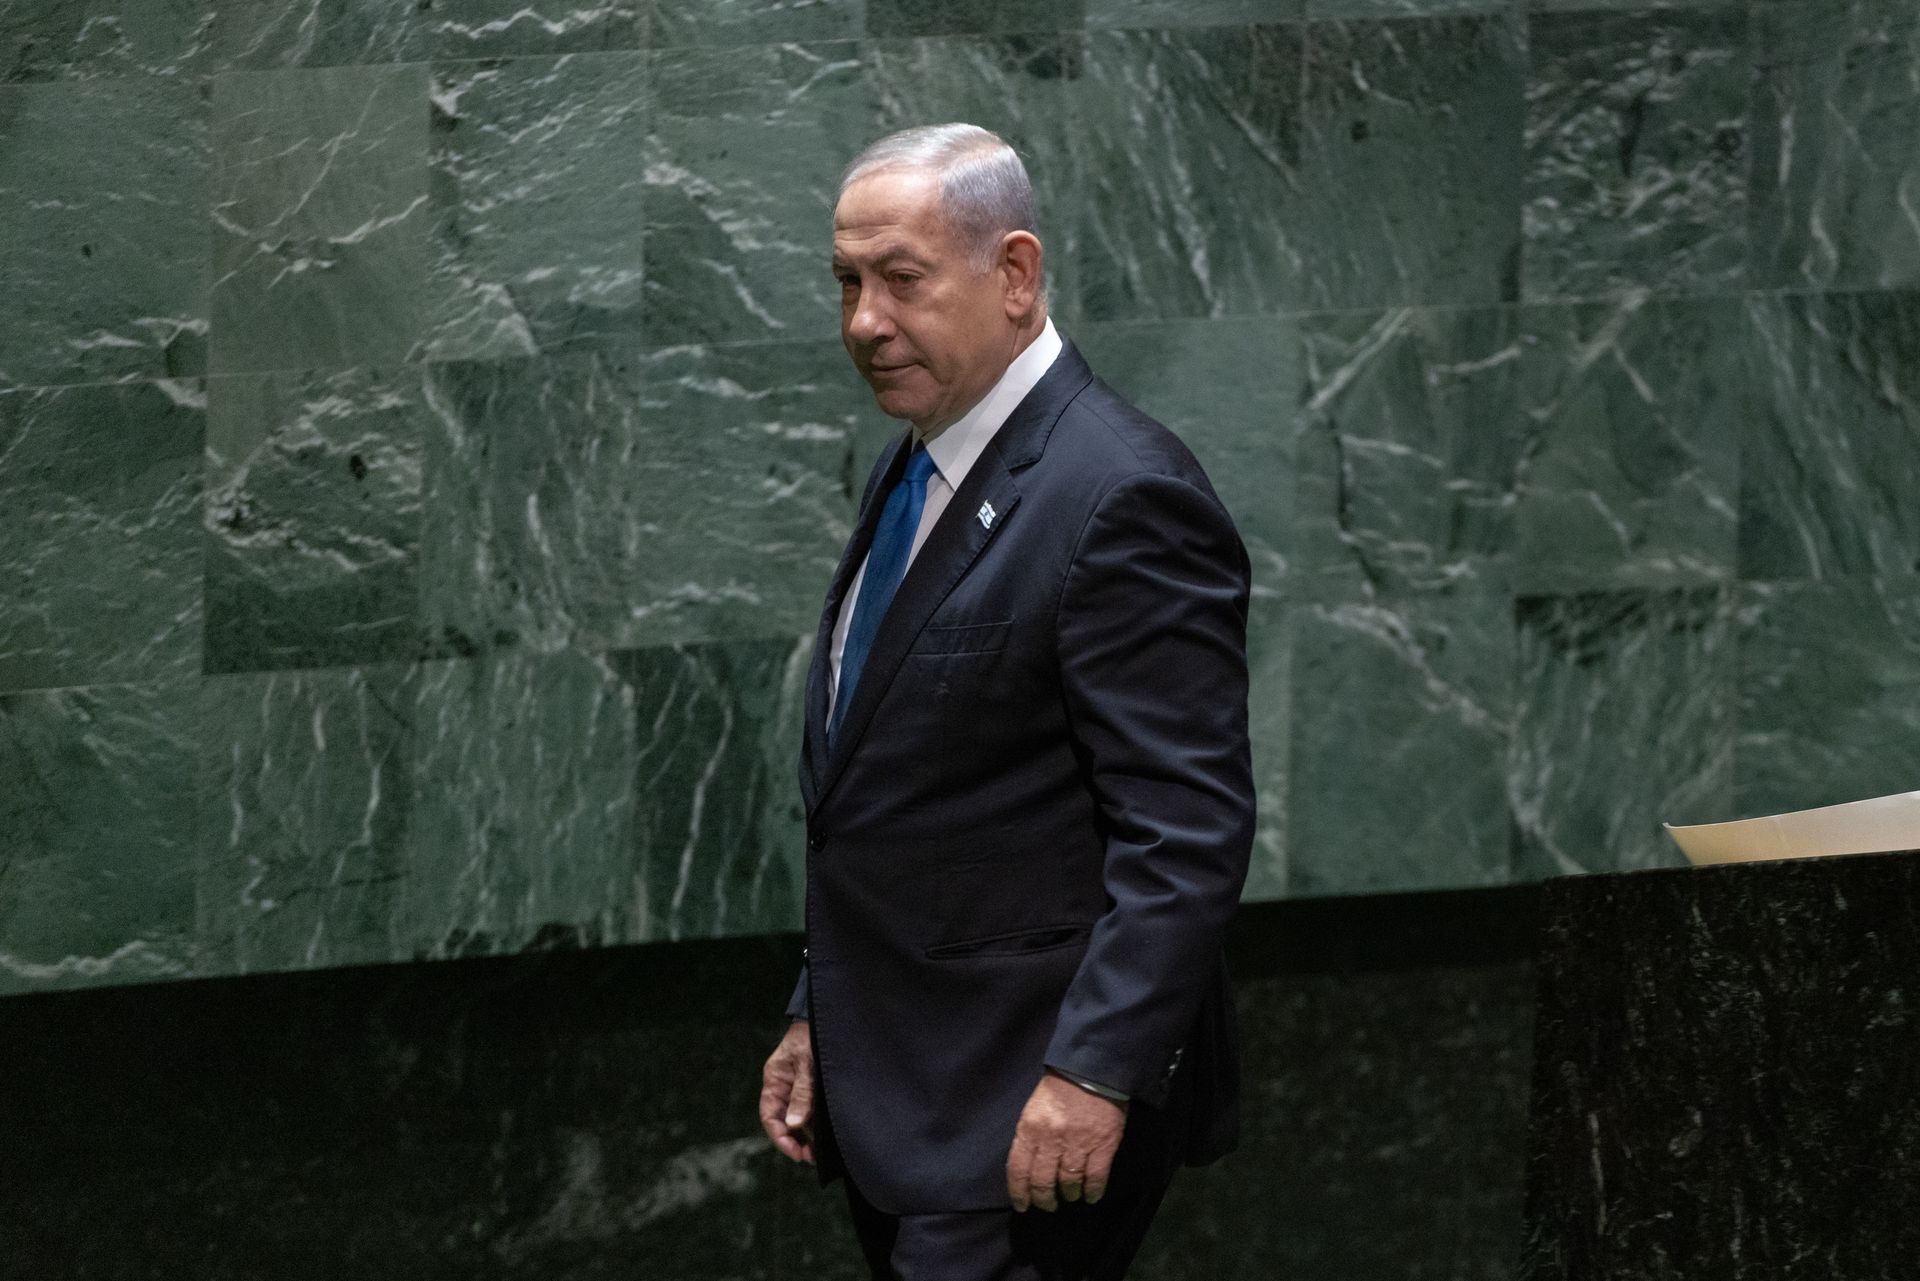 Bunt w rządzie Netanjahu. Minister stawia ultimatum